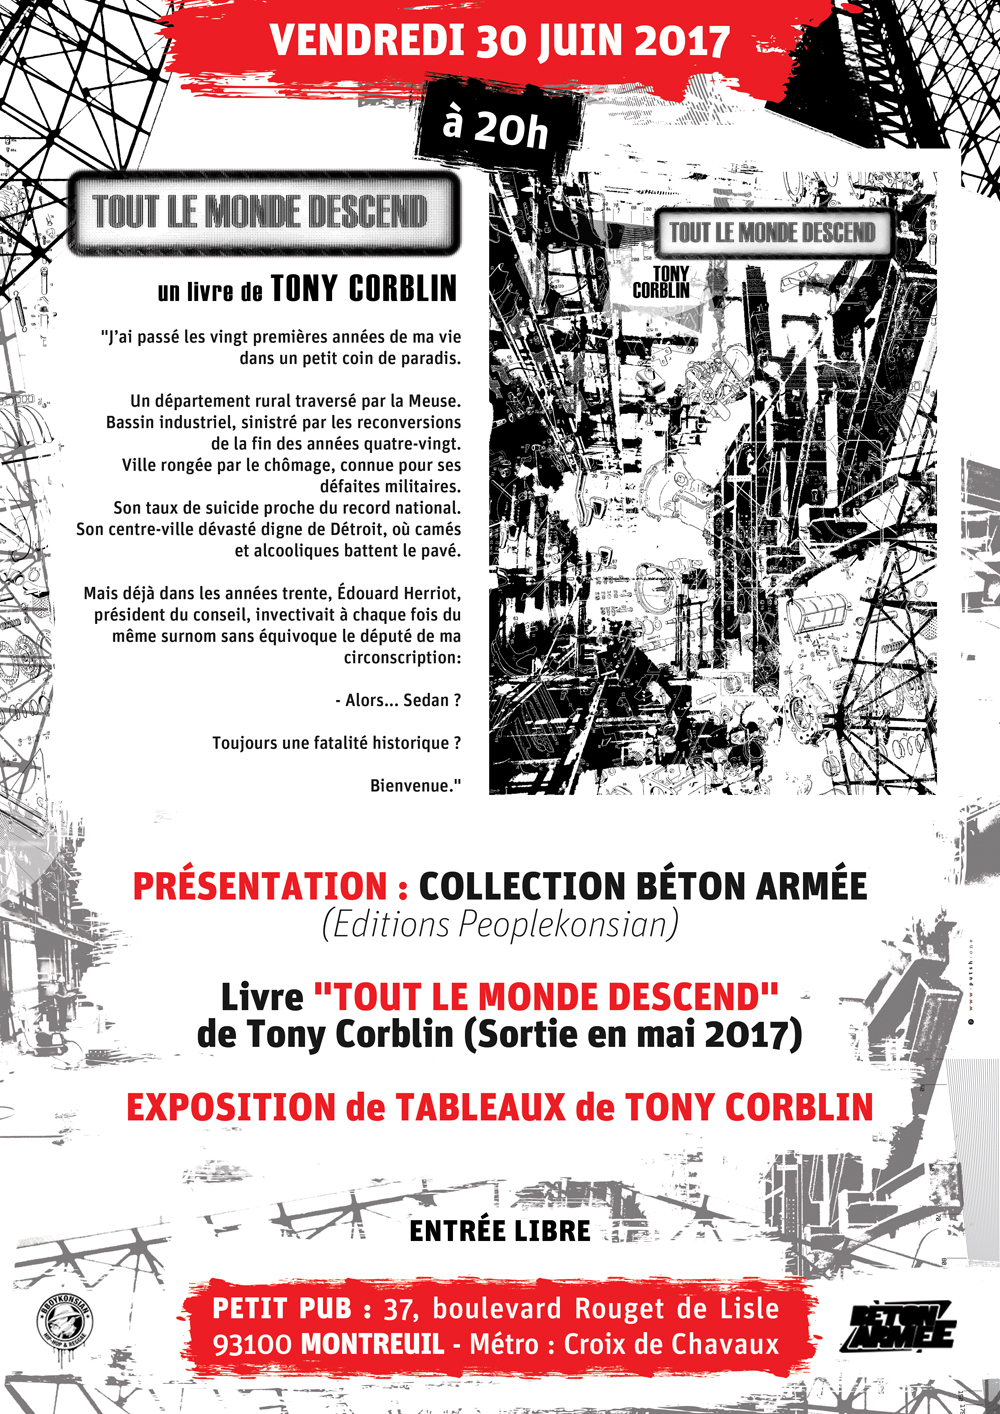 Présentation du livre "Tout le monde descend" de Tony Corblin le 30 juin 2017 à Montreuil